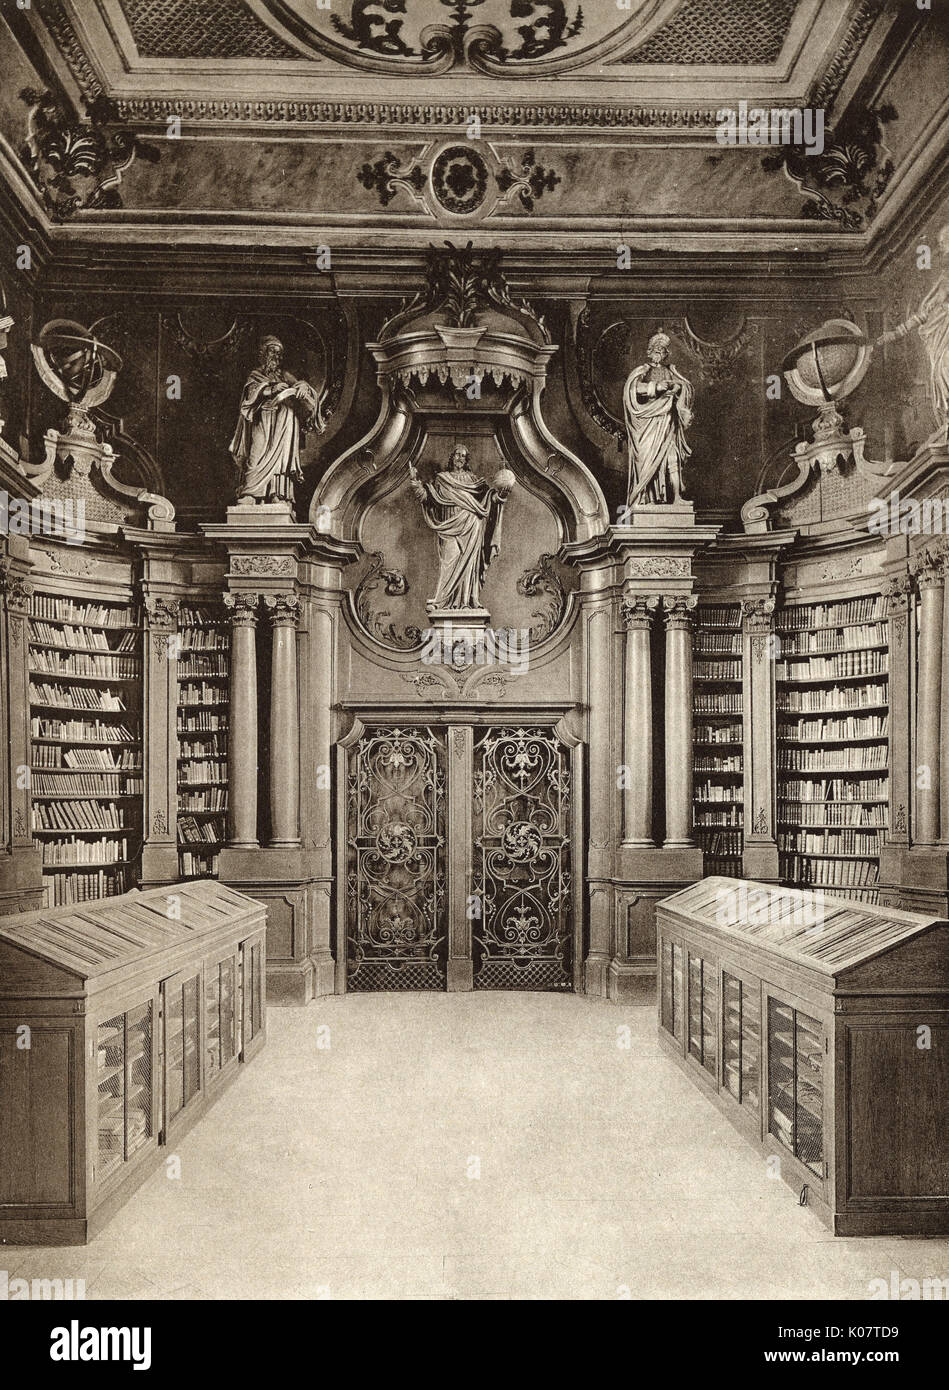 Vue à l'intérieur de la bibliothèque de l'université, Louvain (Leuven),  Belgique, datant du 17ème siècle. Date : vers 1910 Photo Stock - Alamy